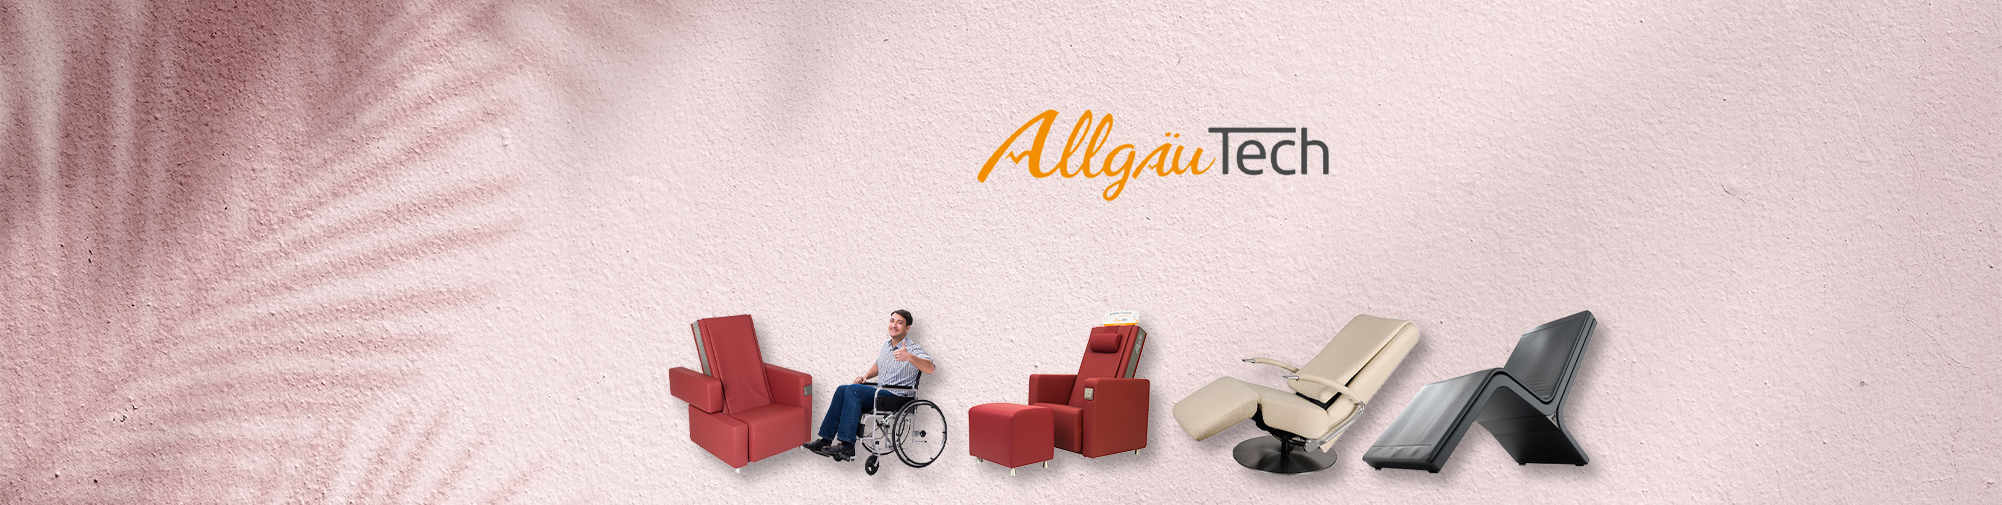 AllgäuTech | Svijet stolica za masažu